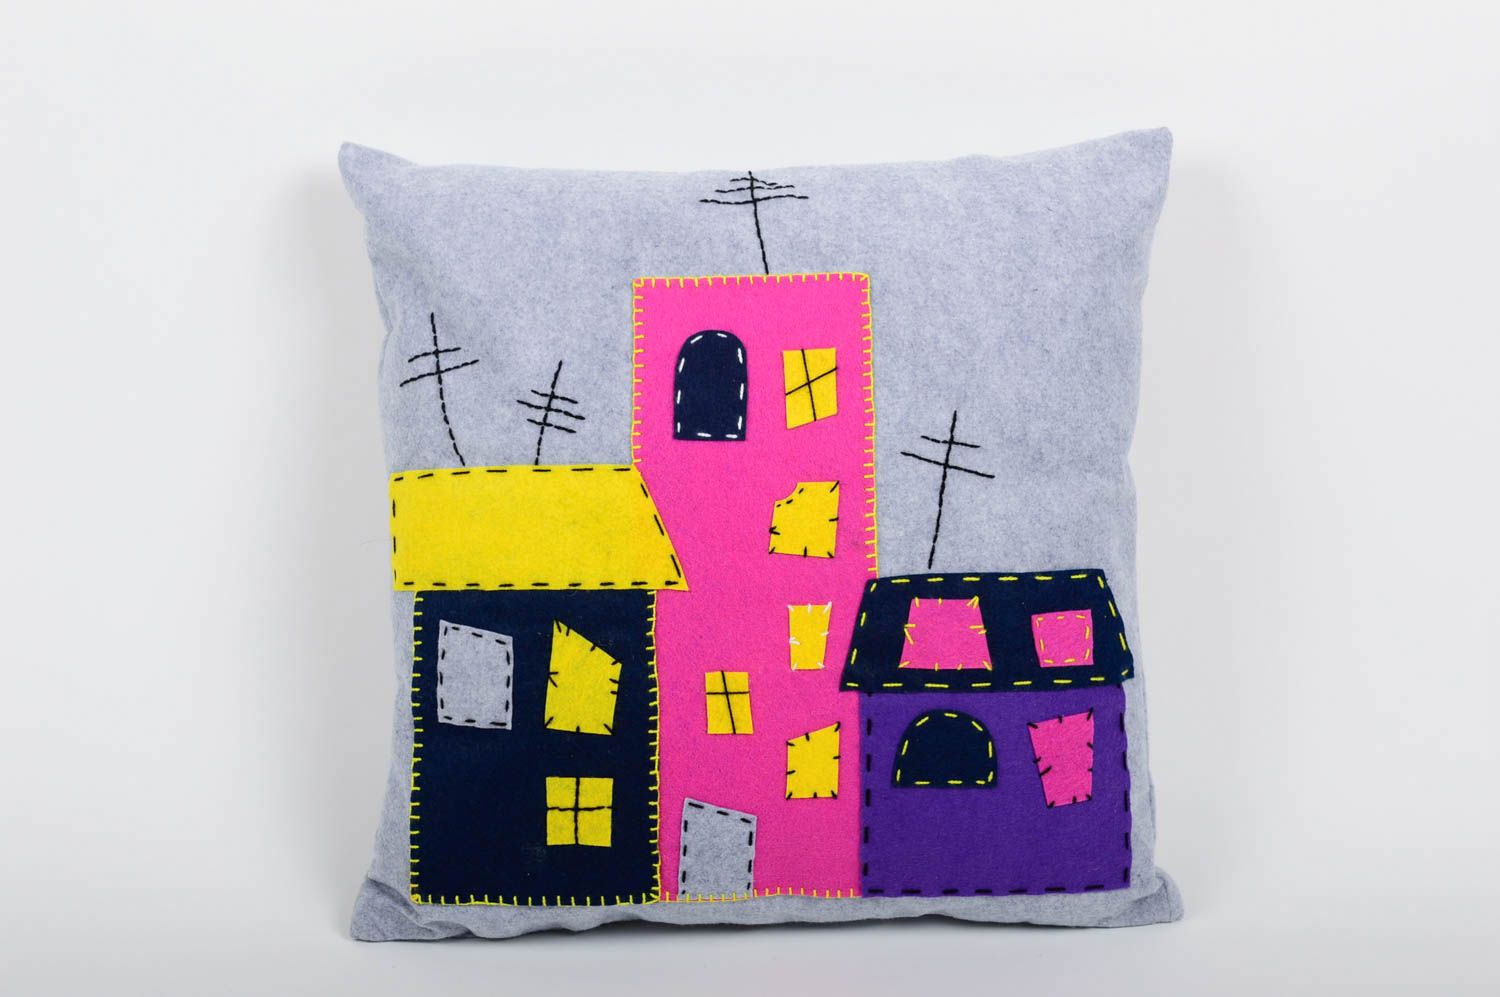 Handmade felt cushion designer decorative pillow for sofa home interior idea photo 1